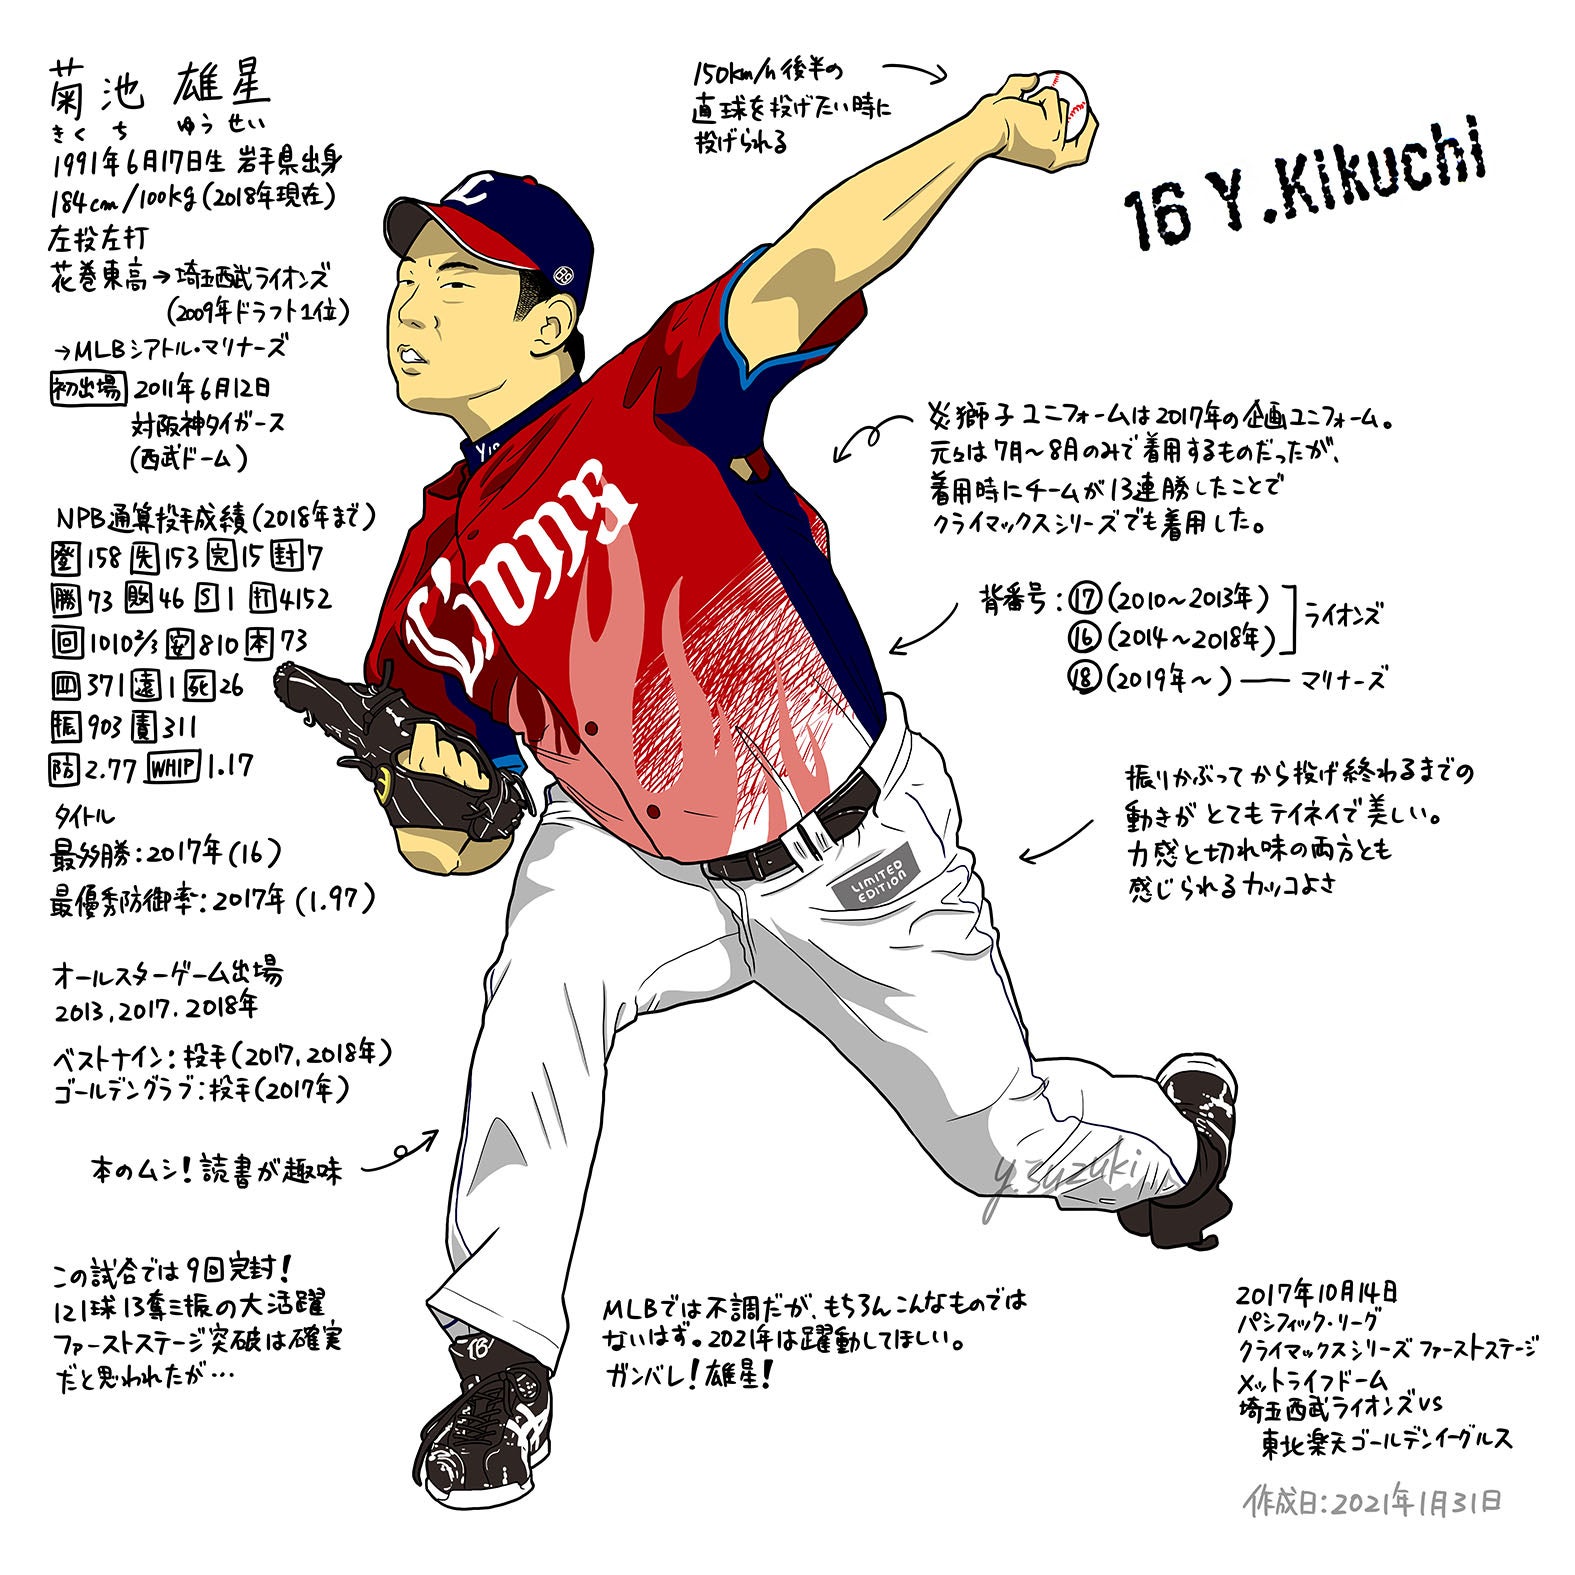 埼玉西武ライオンズ時代の菊池雄星選手 ただの野球好き